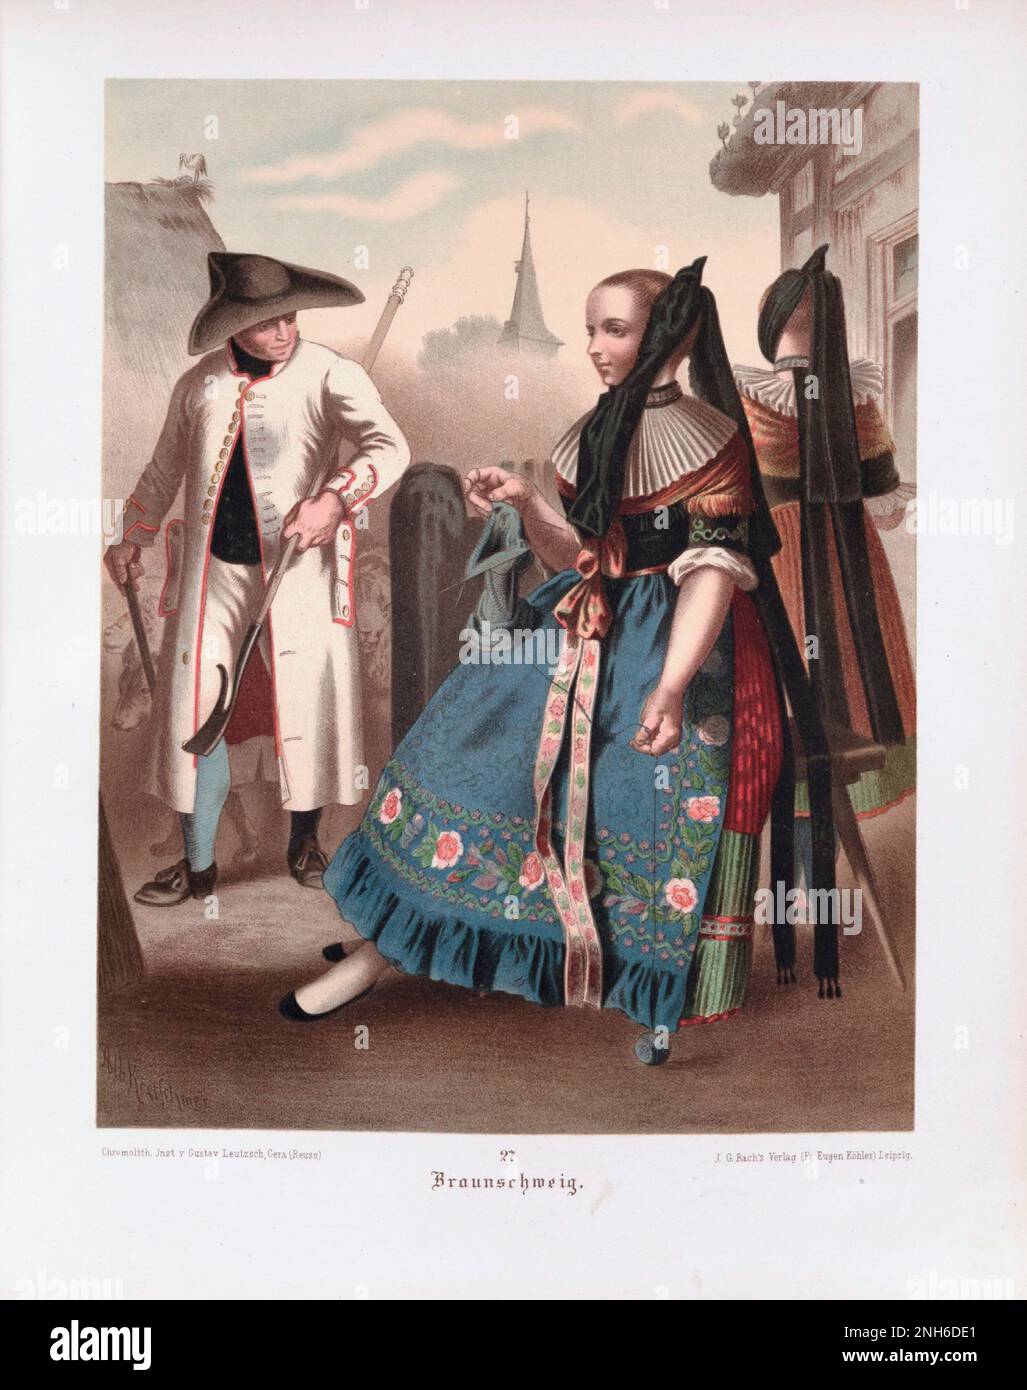 Disfraz folclórico alemán. A cargo de Braunschweig. litografía del siglo 19th. Foto de stock